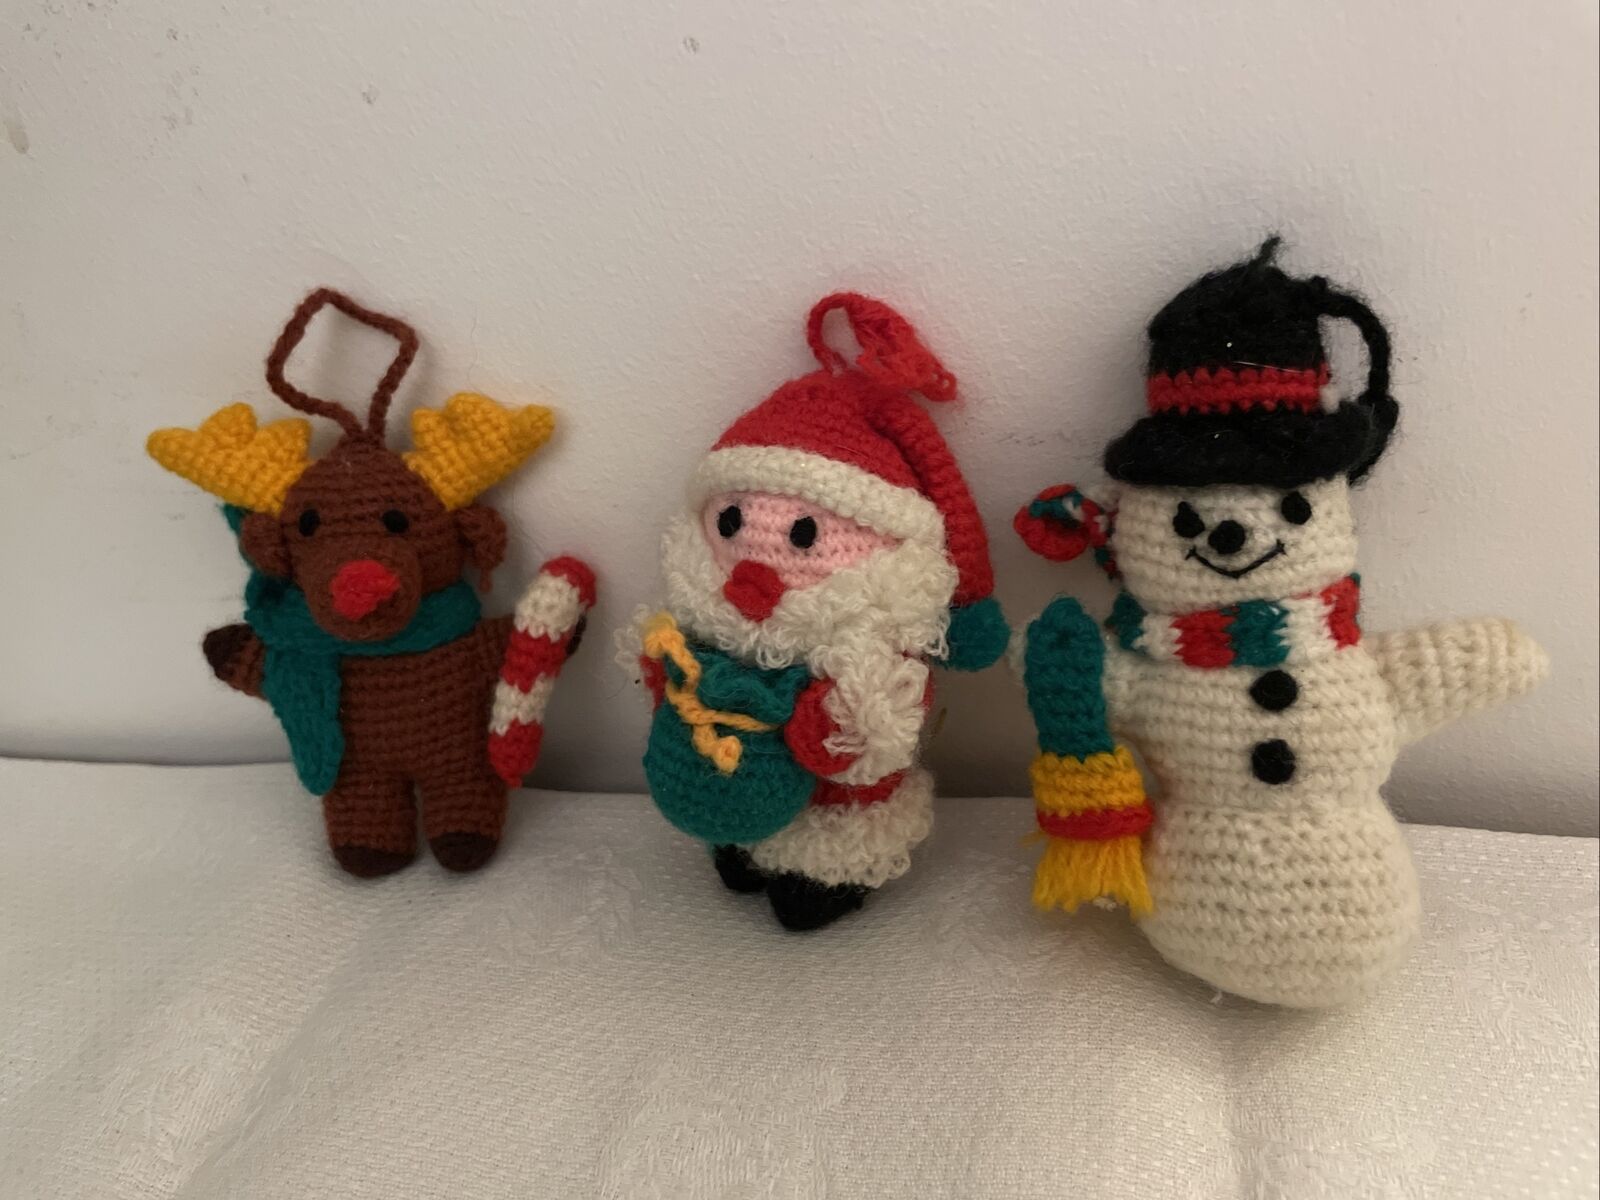 3 Vintage Yarn Knit handmade ornaments Santa Claus Reindeer Snowman Hanging